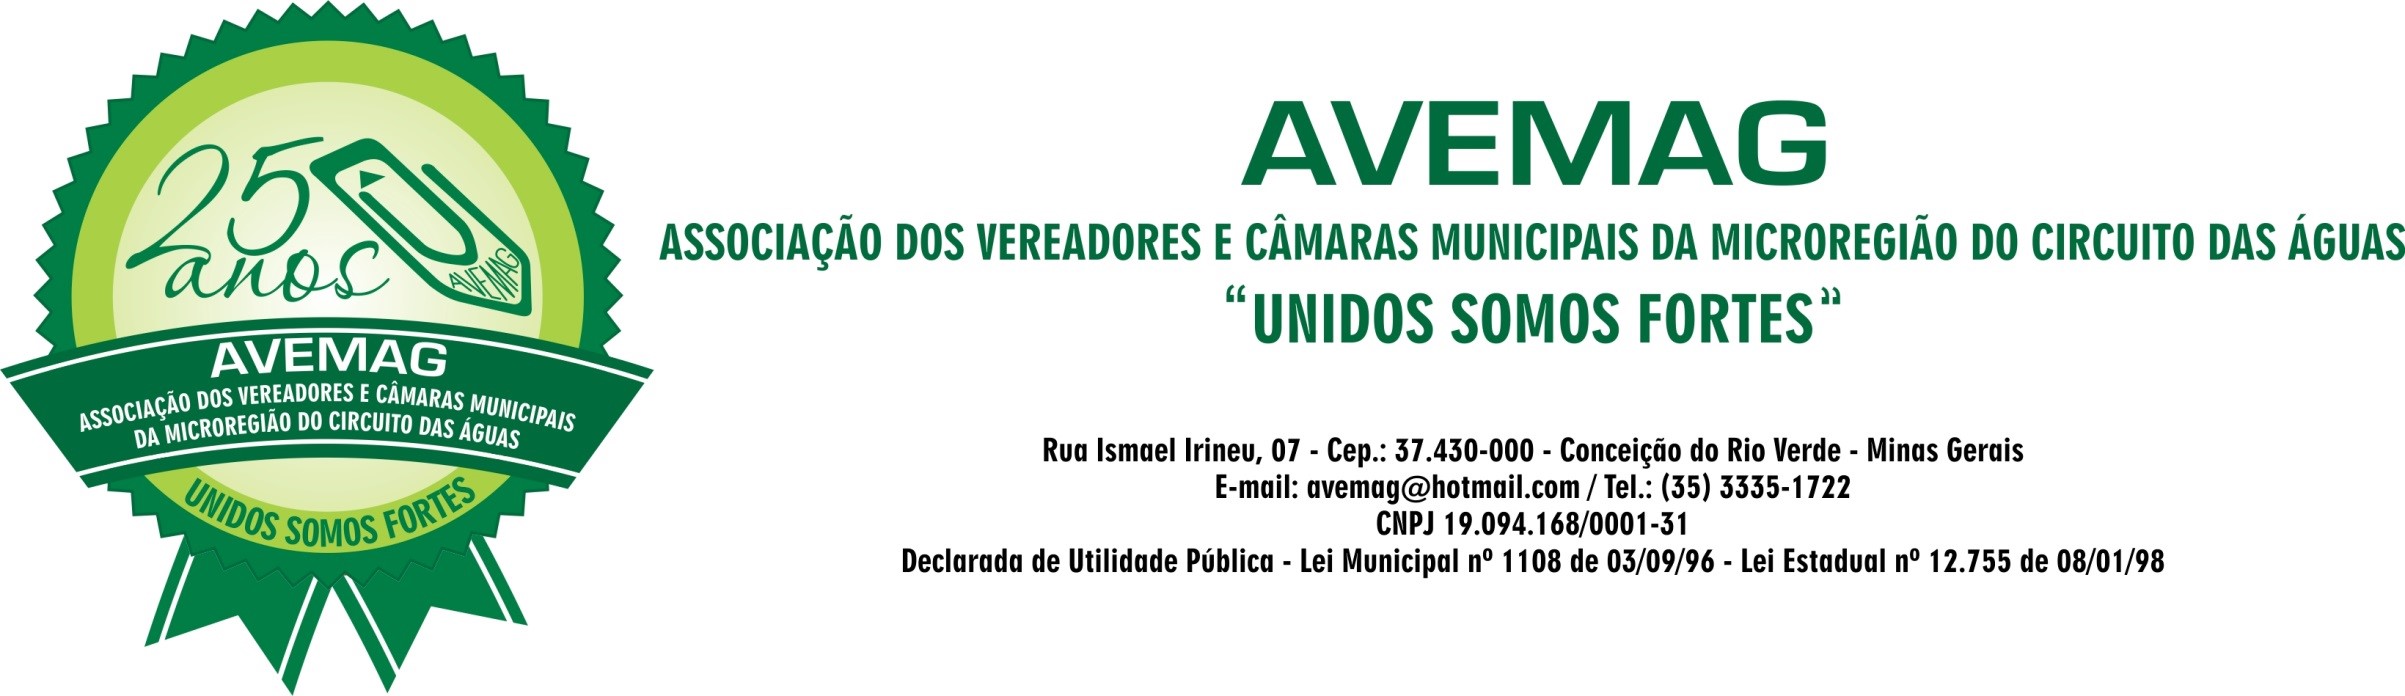 Câmara Municipal de Cristina sediará a 97ª Reunião Ordinária da Avemag